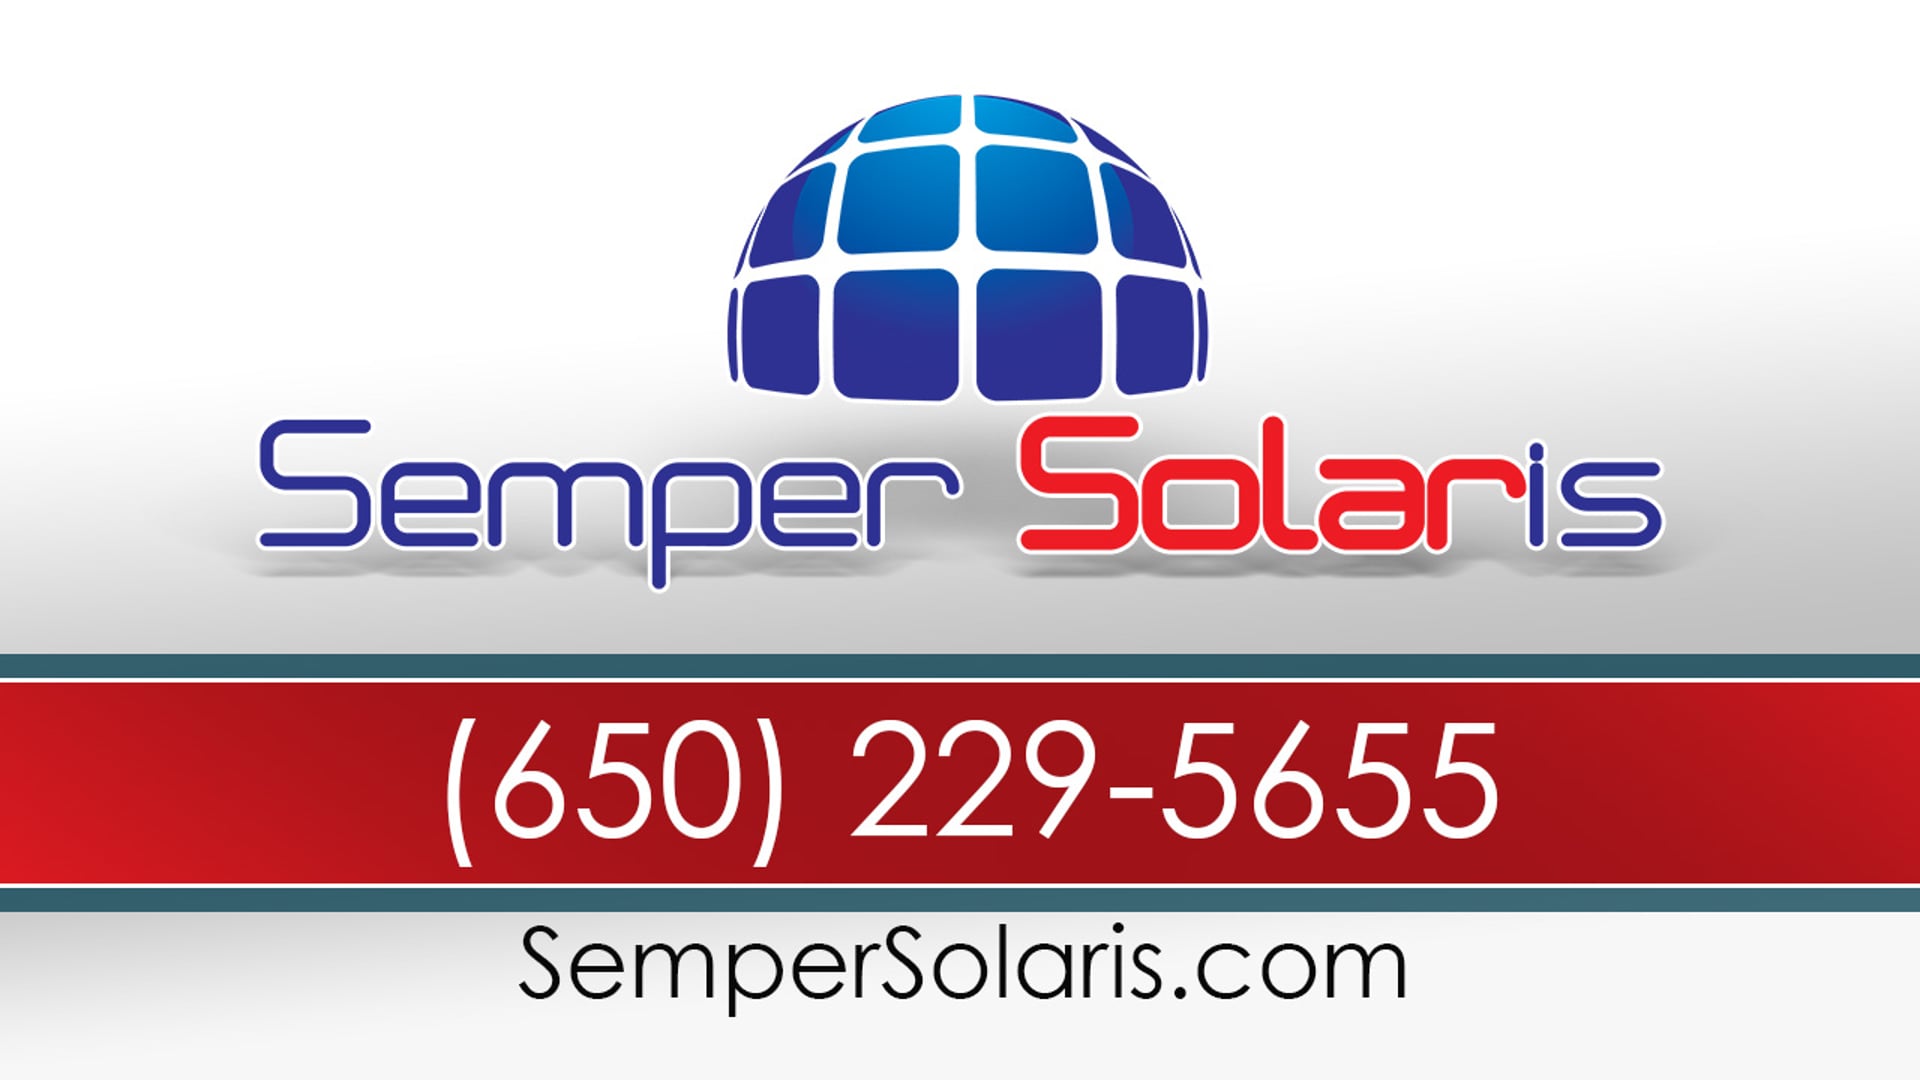 Best Solar Providers In Vacaville Ca | Semper Solaris | (650) 229-5655